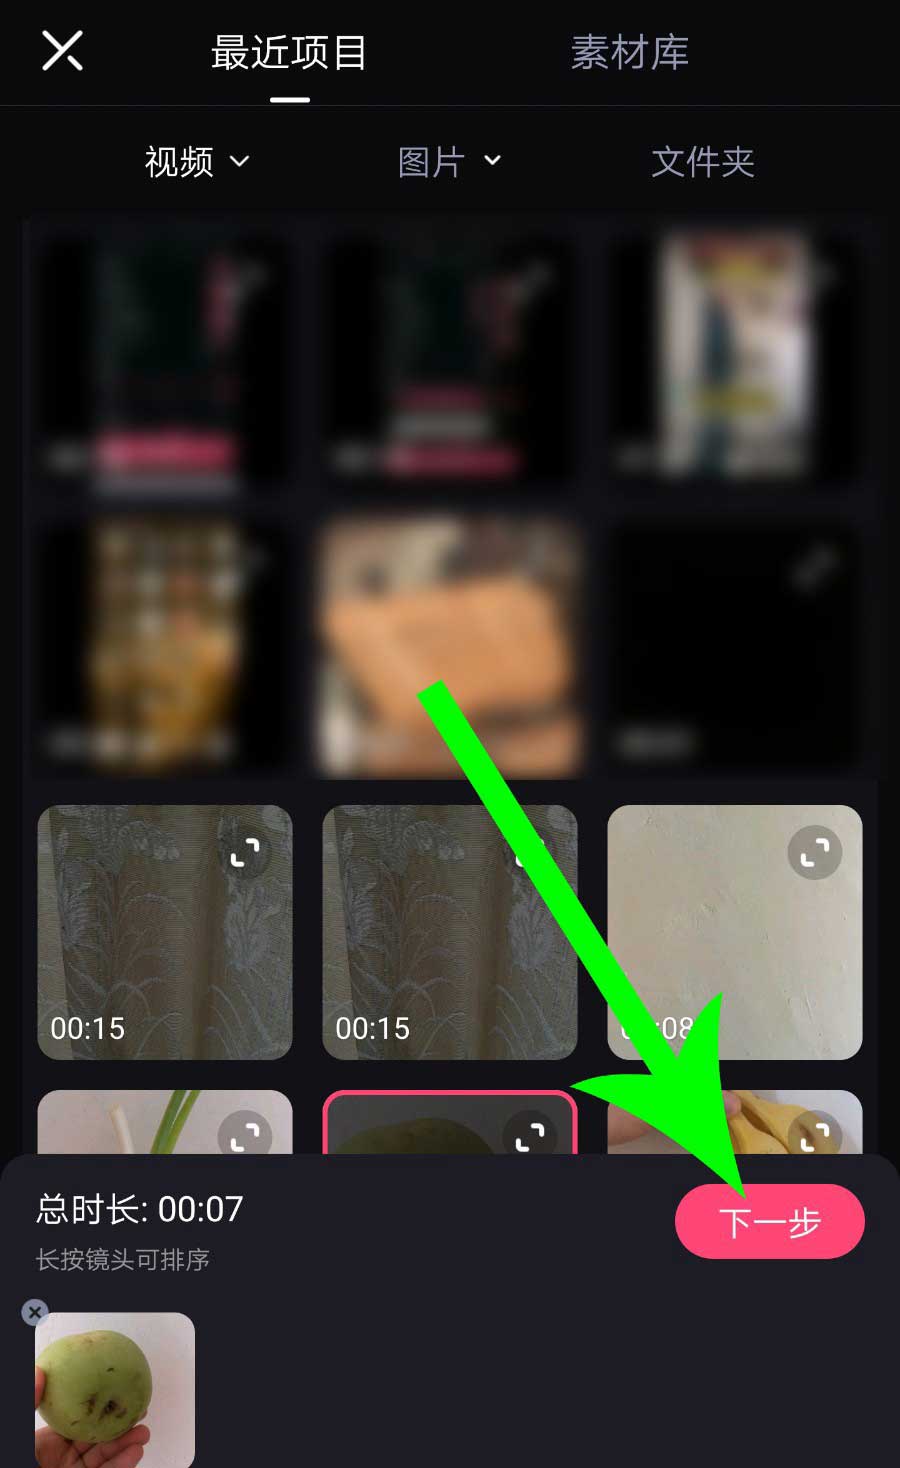 必剪app视频怎么导出? 必剪导出视频保存到本地的技巧